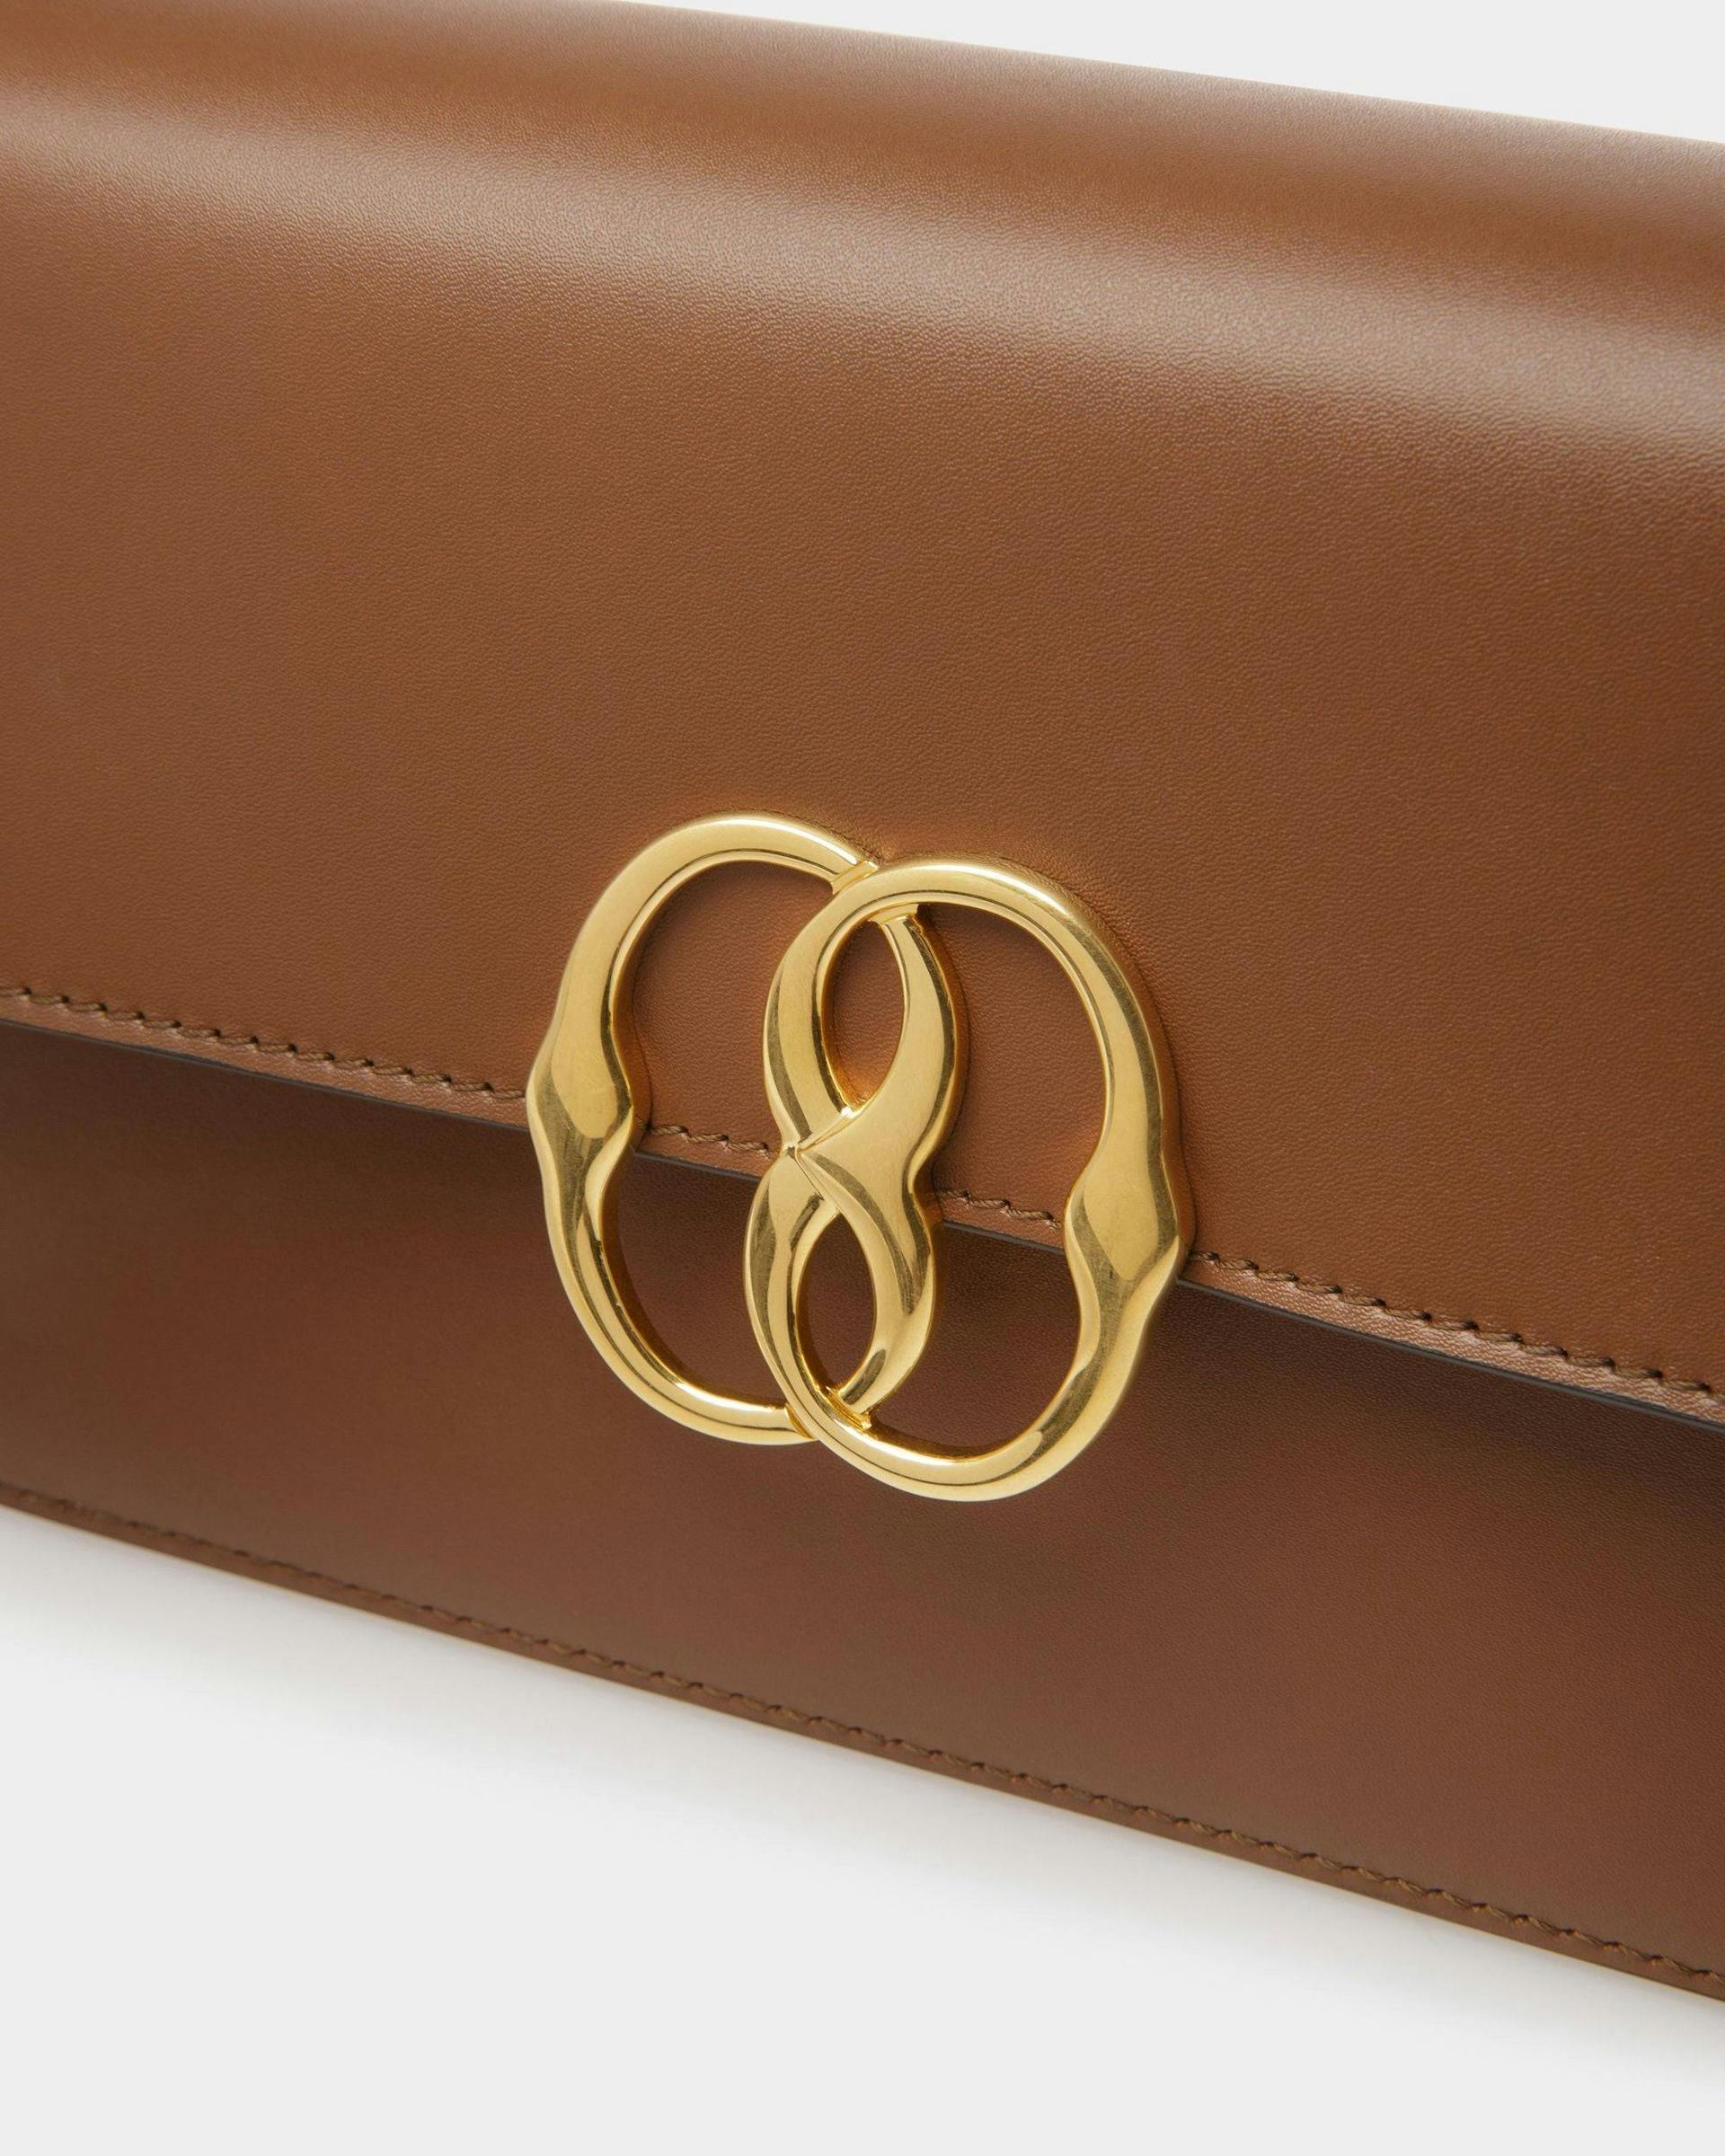 Women's Emblem Shoulder Bag In Brown Leather | Bally | Still Life Detail